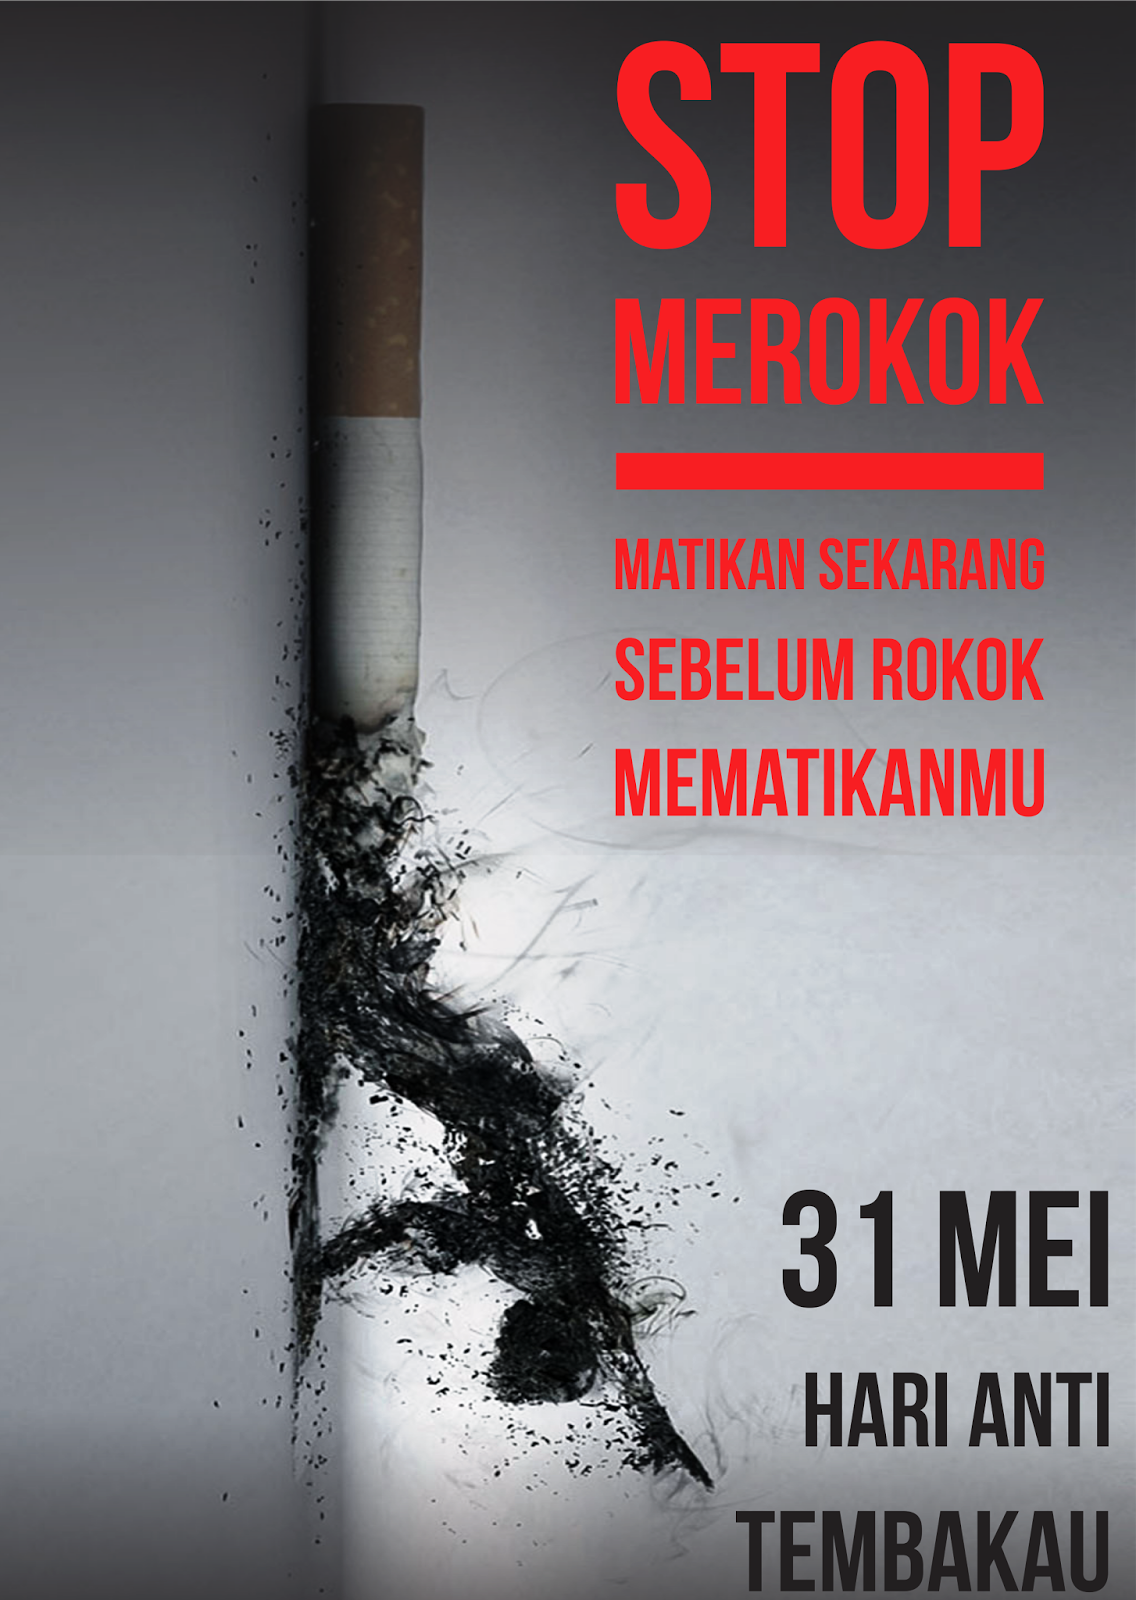 Hari Tanpa Tembakau Sedunia 2016 Bersiaplah Untuk Kemasan Polos Berita Banten Banten Ekspose